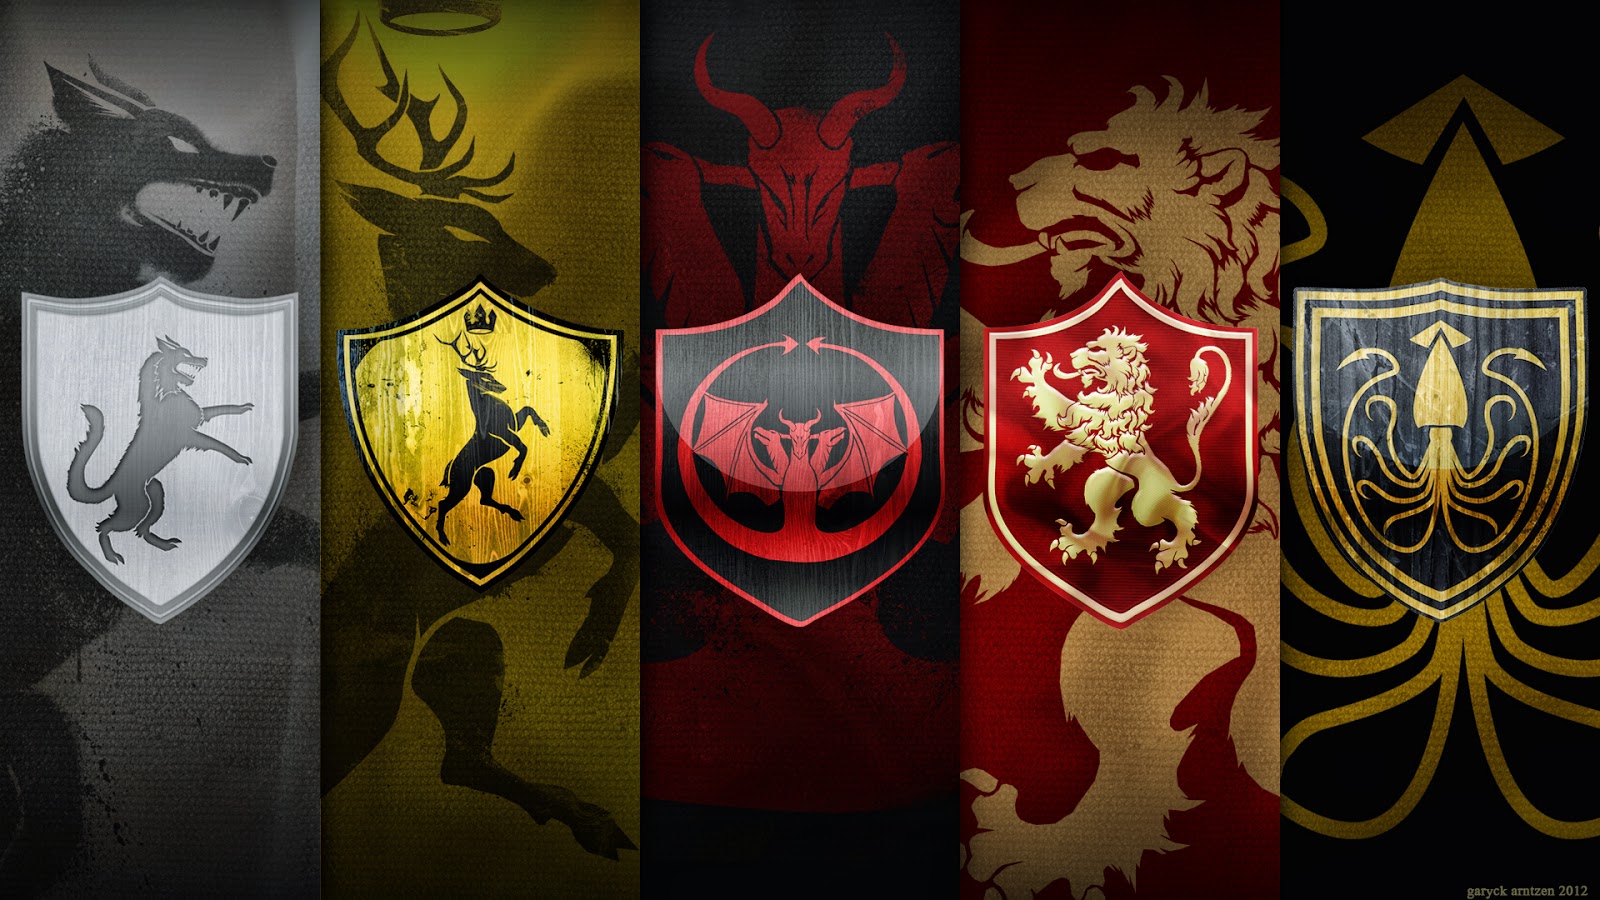 Game of thrones wallpaper - All Best Desktop Wallpapers